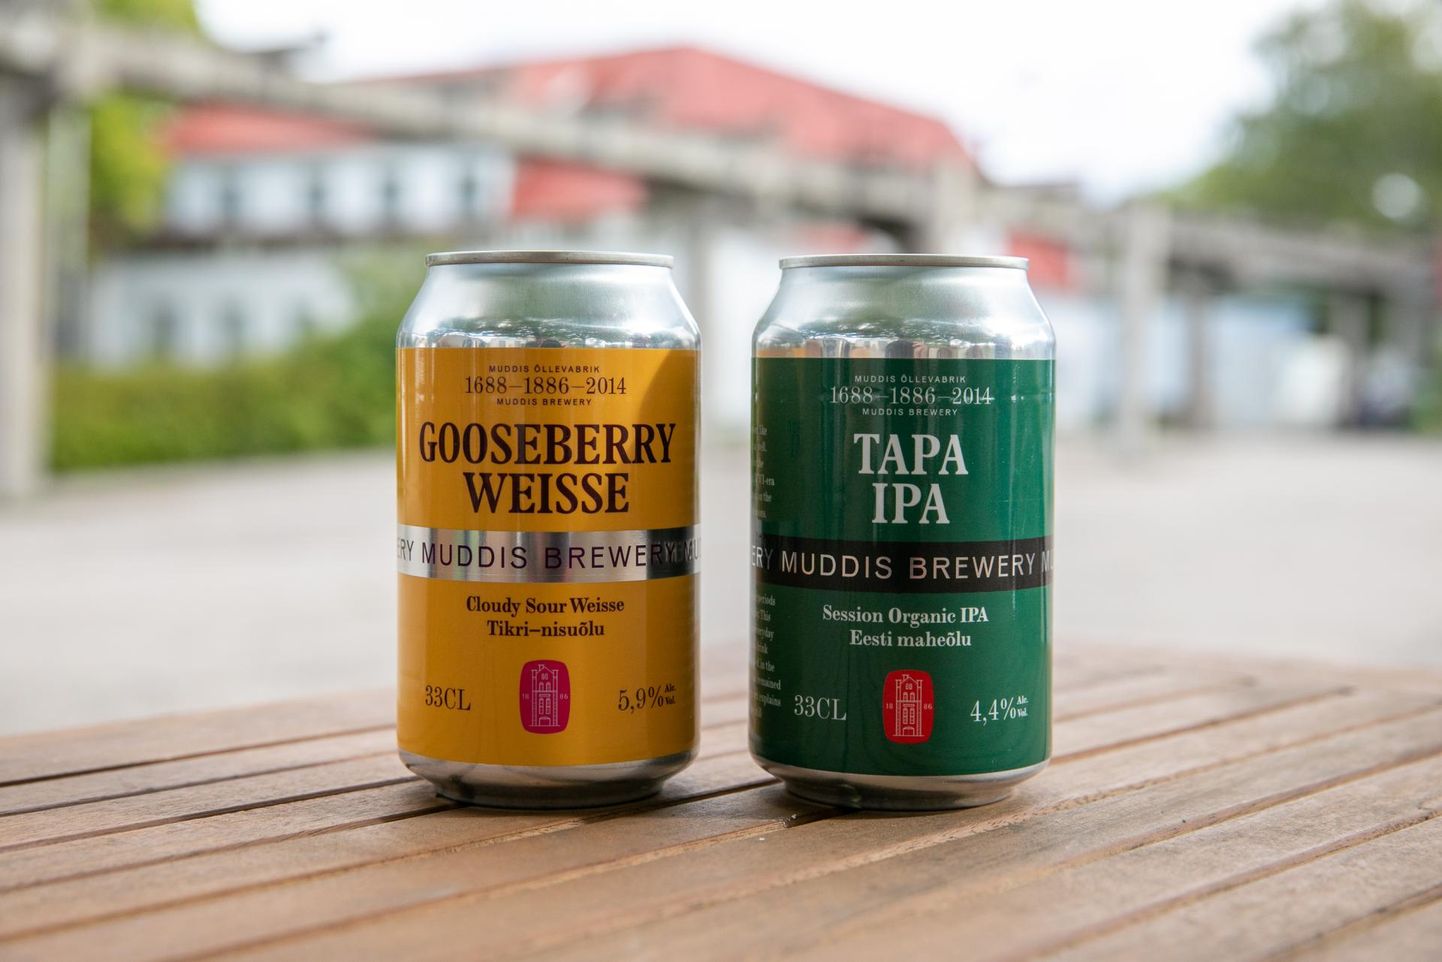 Esimesed kaks Moe õllevabrikus purki pandud õlut on Tapa IPA ja Gooseberry Weisse, mida pudelites ei turustatagi.